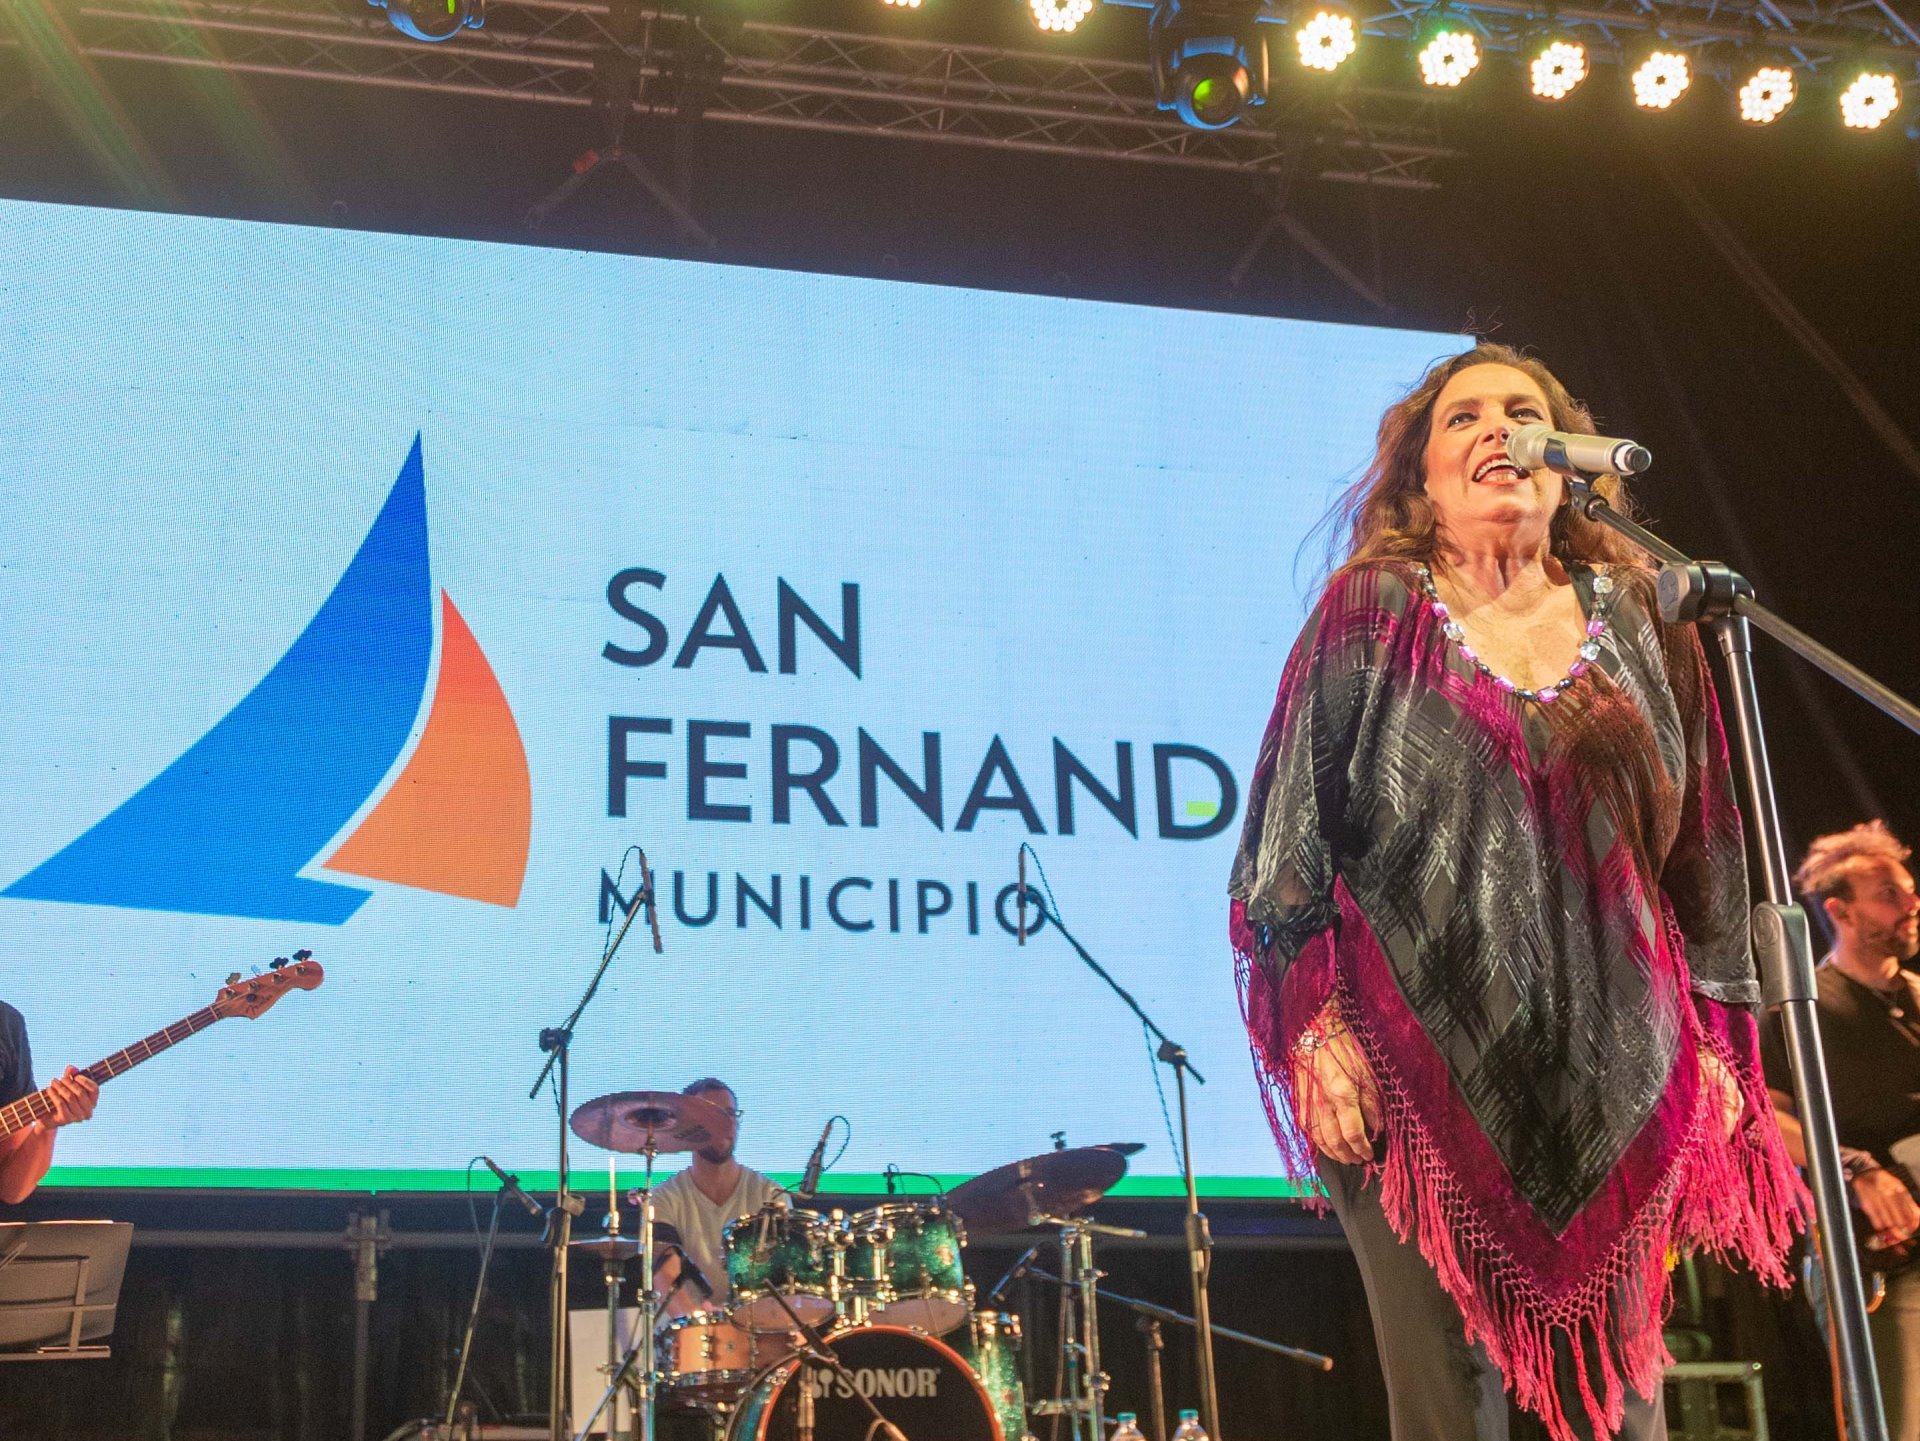 Sandra Mihanovich cantó en San Fernando por la Eliminación de la Violencia contra la Mujer